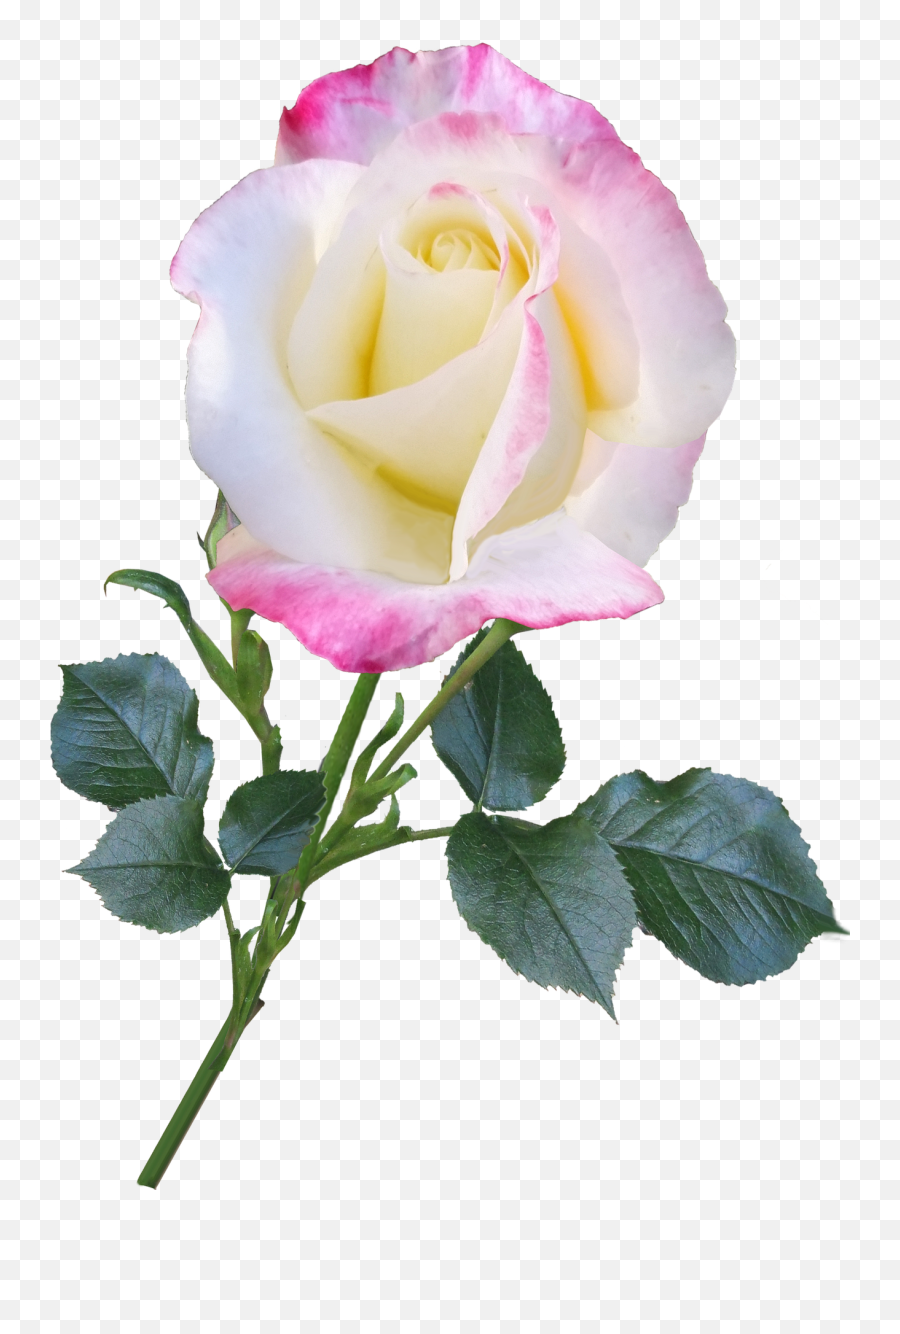 Rose Bloom Flower Stem Nature - Rose Is For You Quotes Emoji,Flower Stem Png